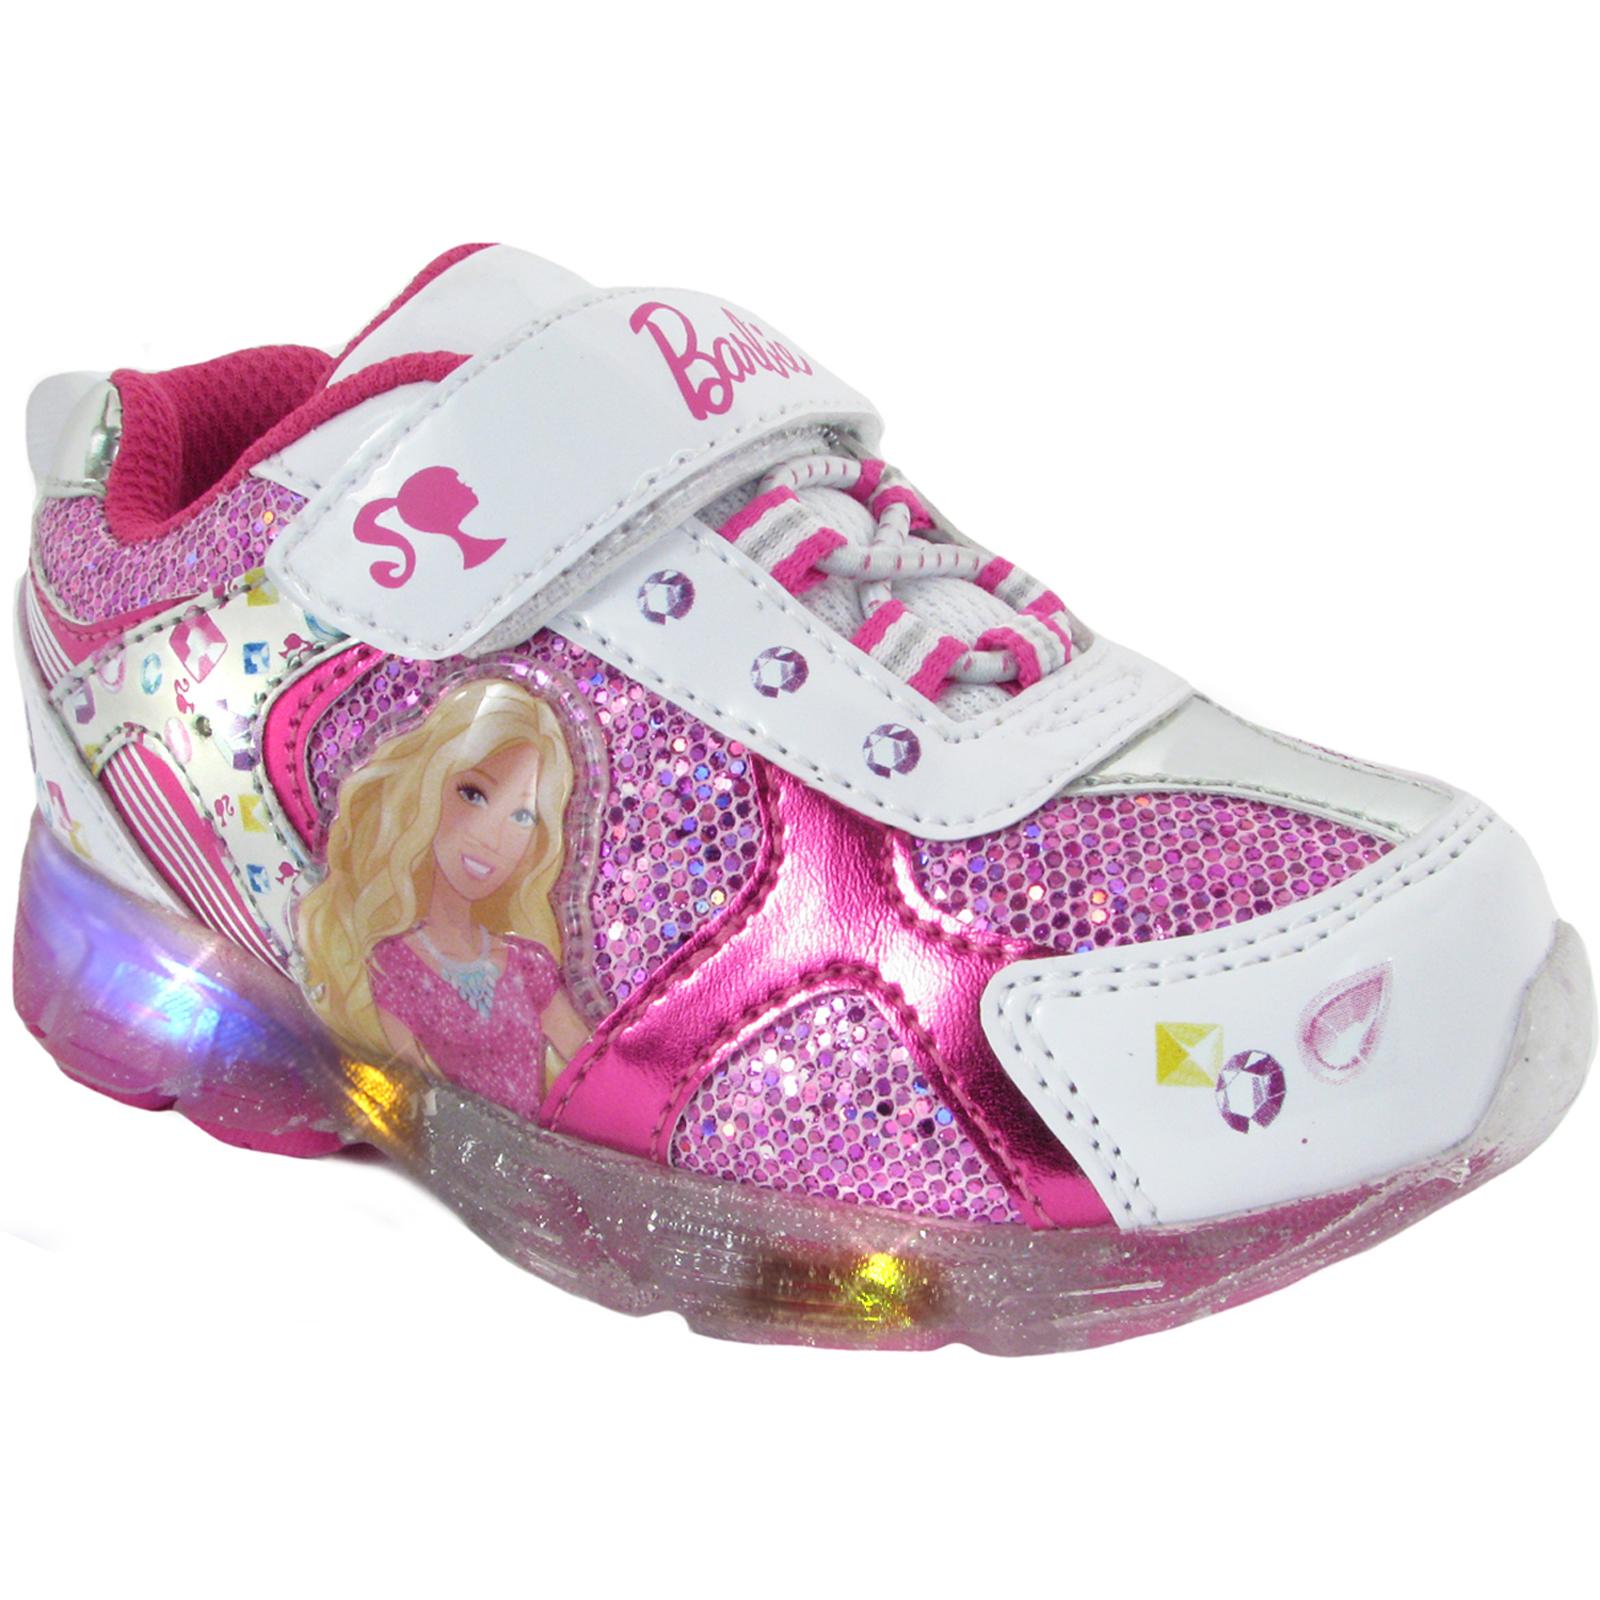 Barbie Kids' Barbie Sneaker Little Kid Shoes (White/Pink Multi) - Size 4.0 M